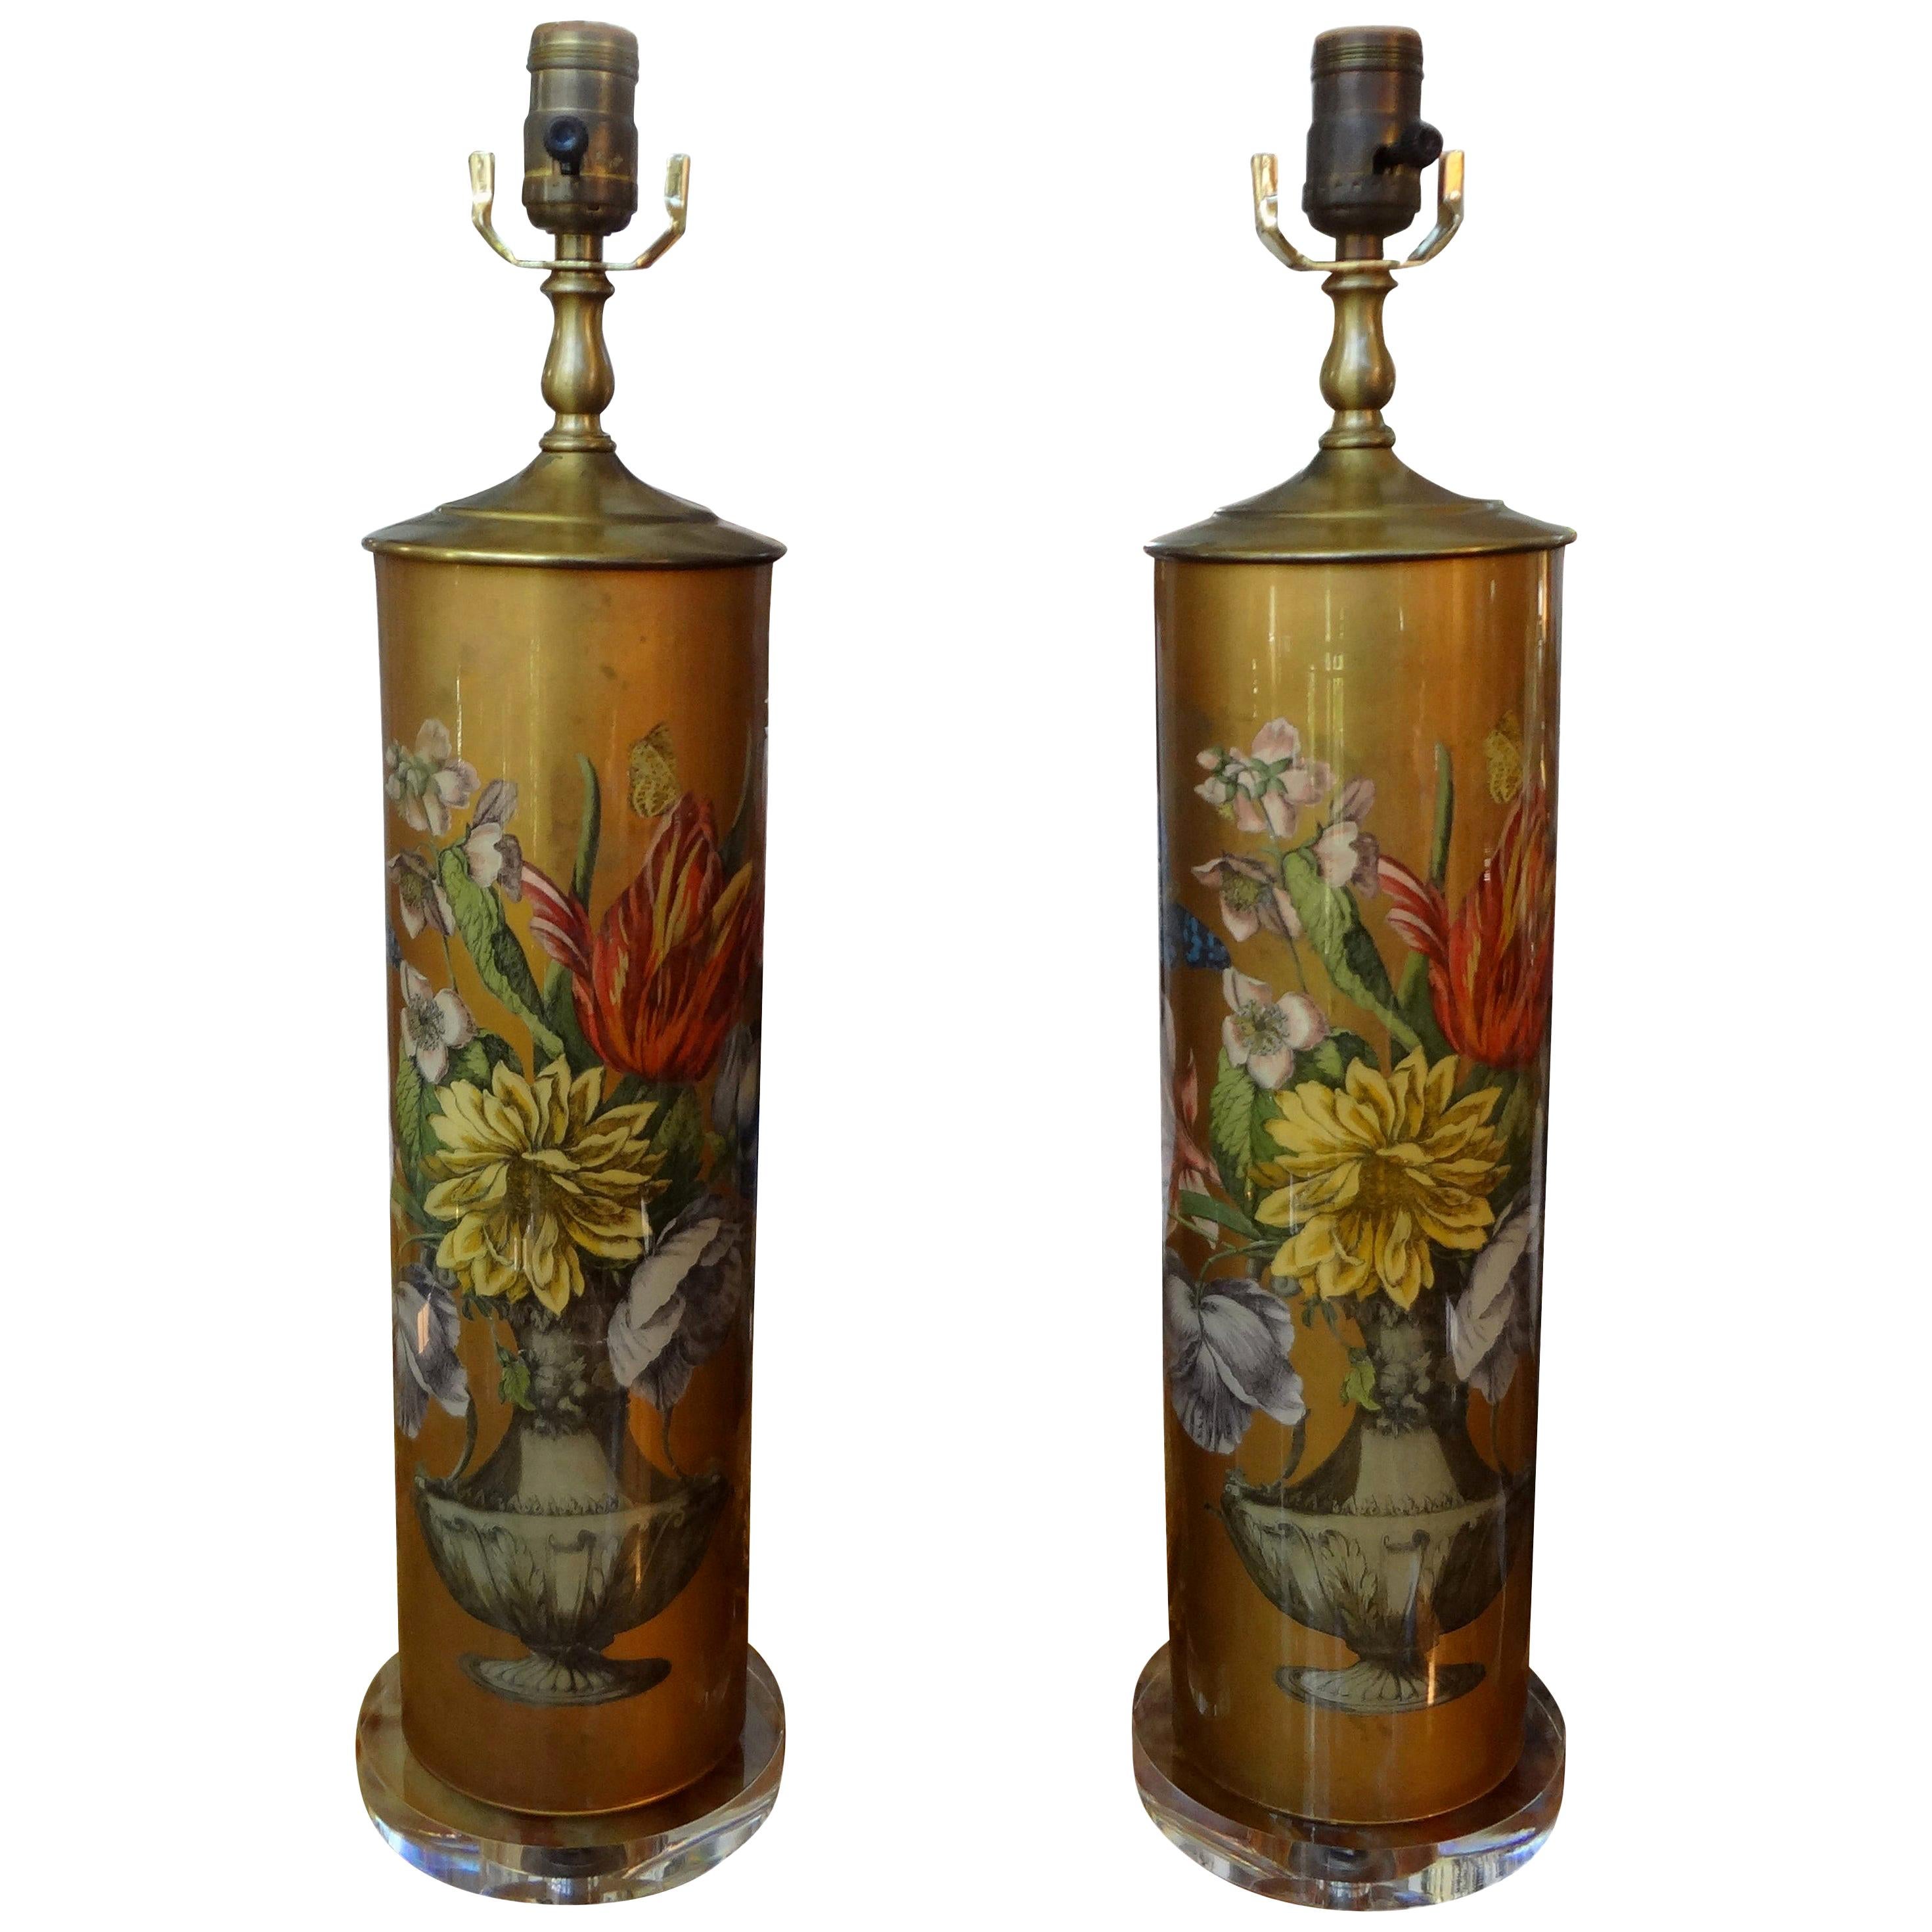 Pair of Églomisé Lamps with Floral Design